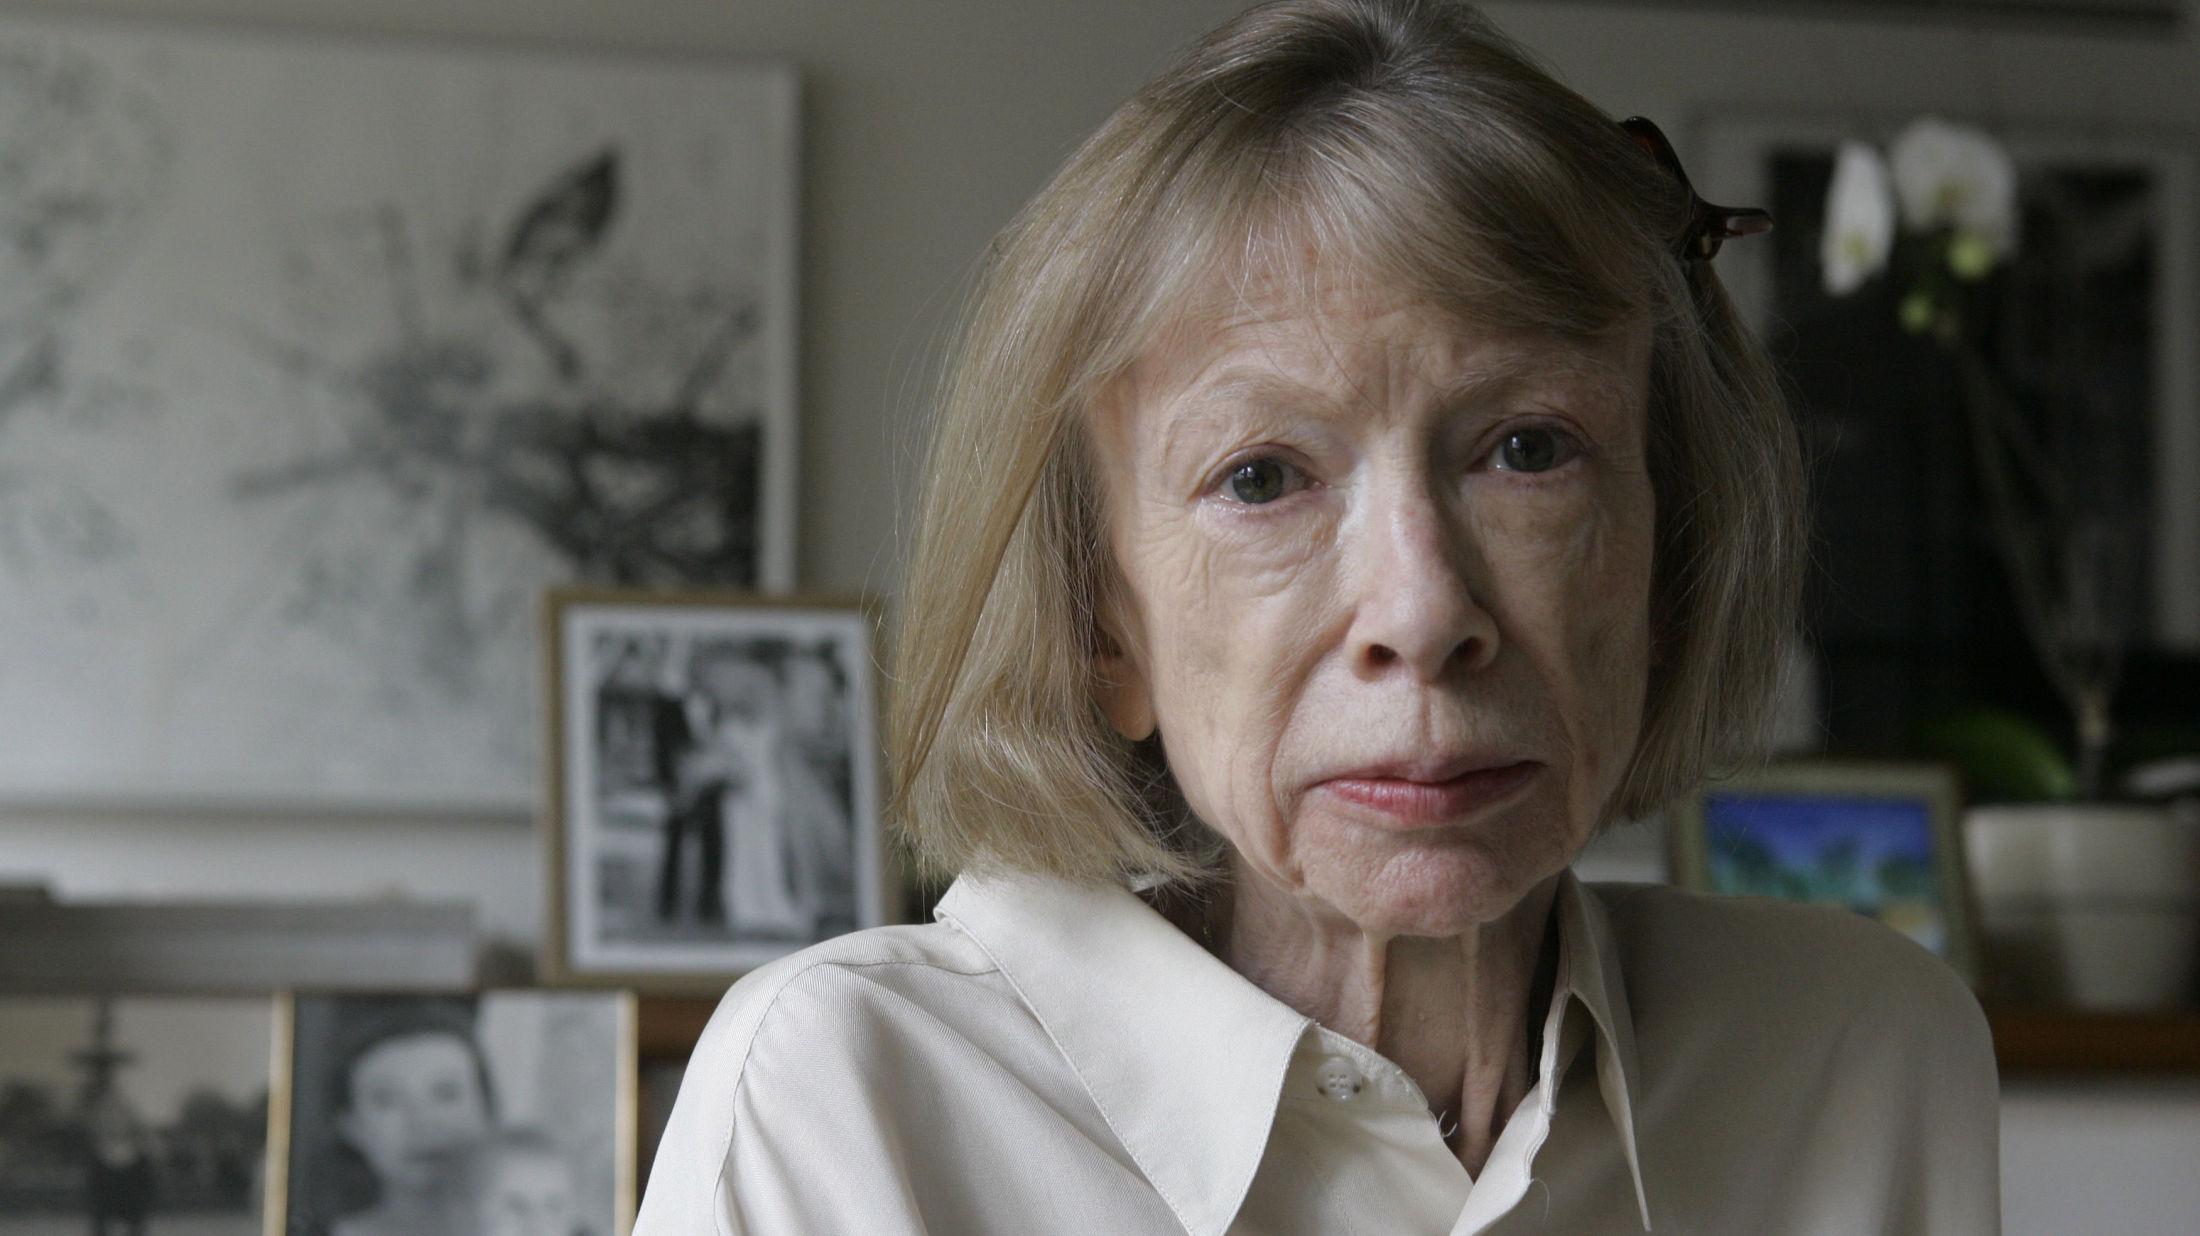 STILSIKKER Joan Didion er mest kjent for sitt forfatterskap, men er også kjent fror sin ikoniske stil. Nå blir hun dessuten et enda hetere navn i motebransjen, som Célines kampanjemodell. Foto: NTB Scanpix